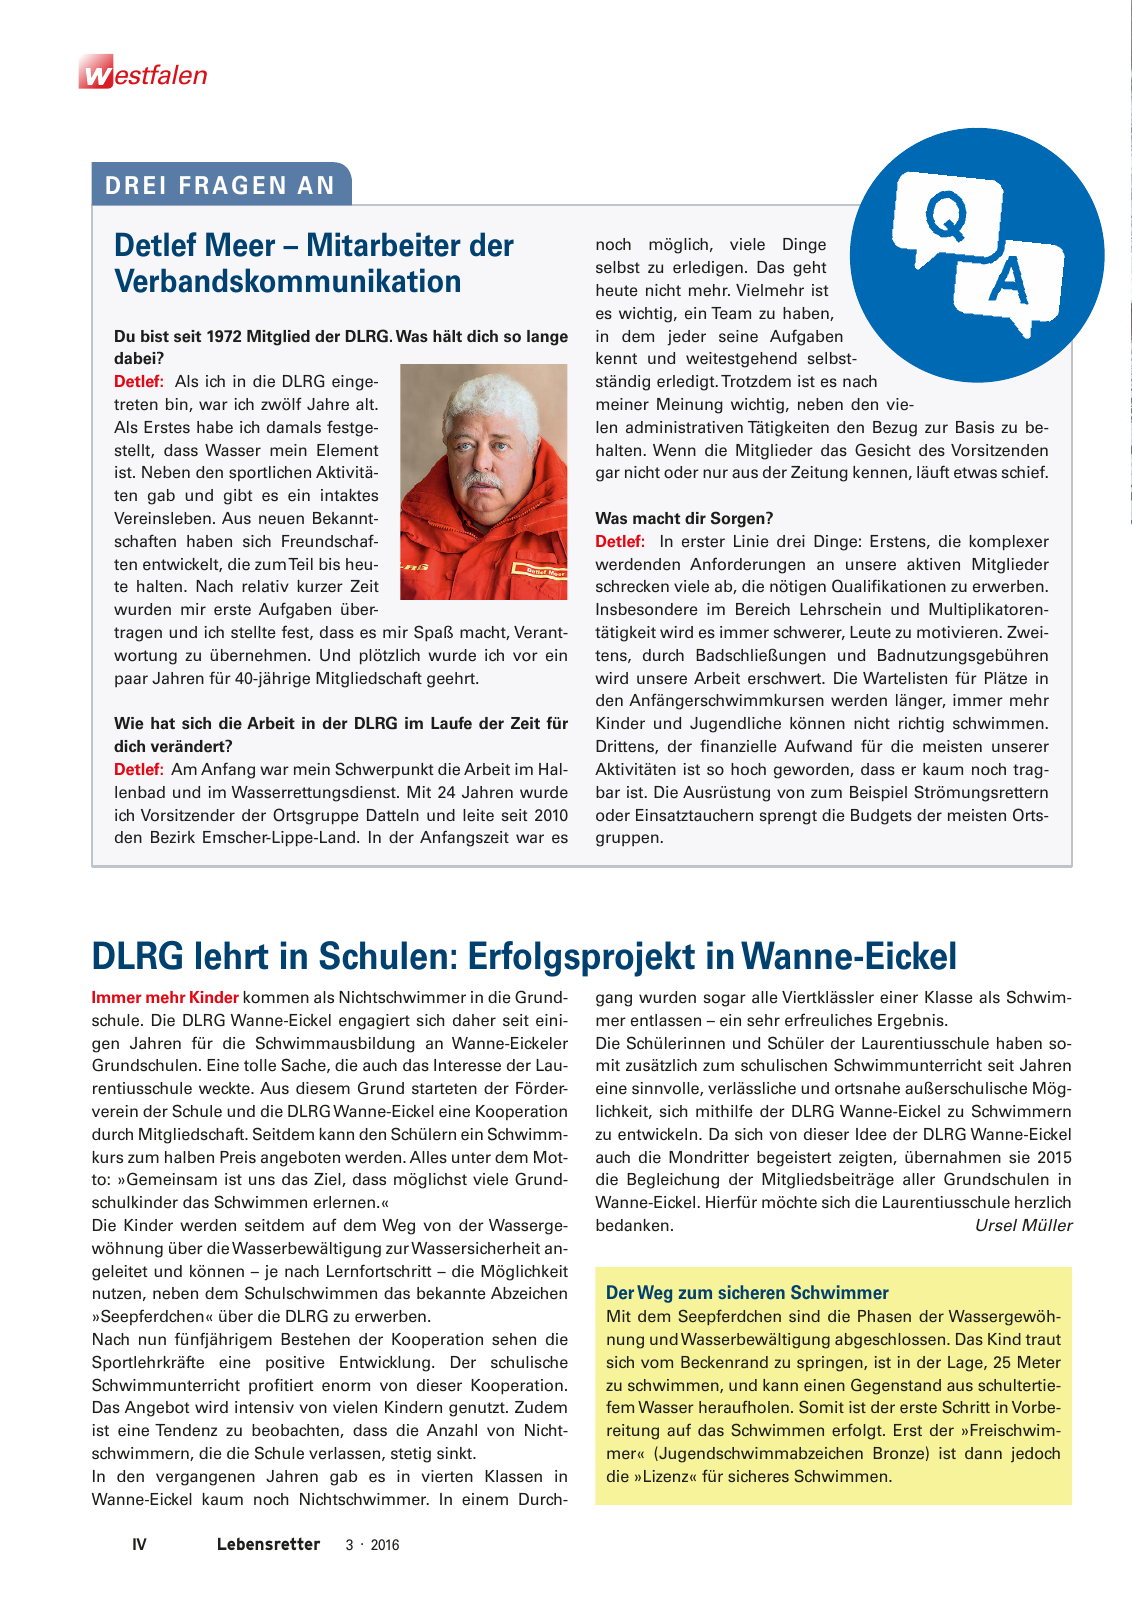 Vorschau Lebensretter 3/2016 - Regionalausgabe Westfalen Seite 6